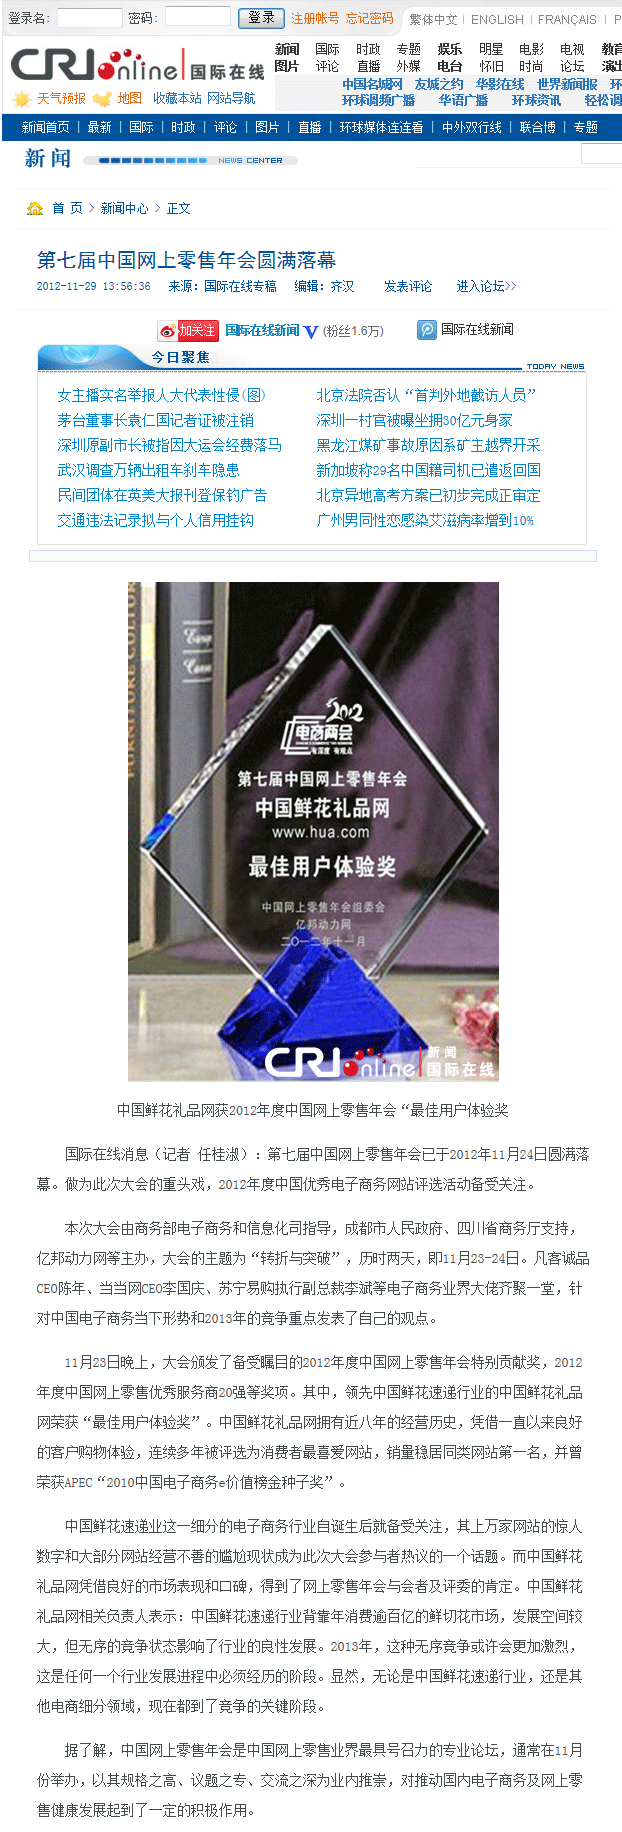 中国鲜花礼品网(Hua.com)获“最佳用户体验奖”。